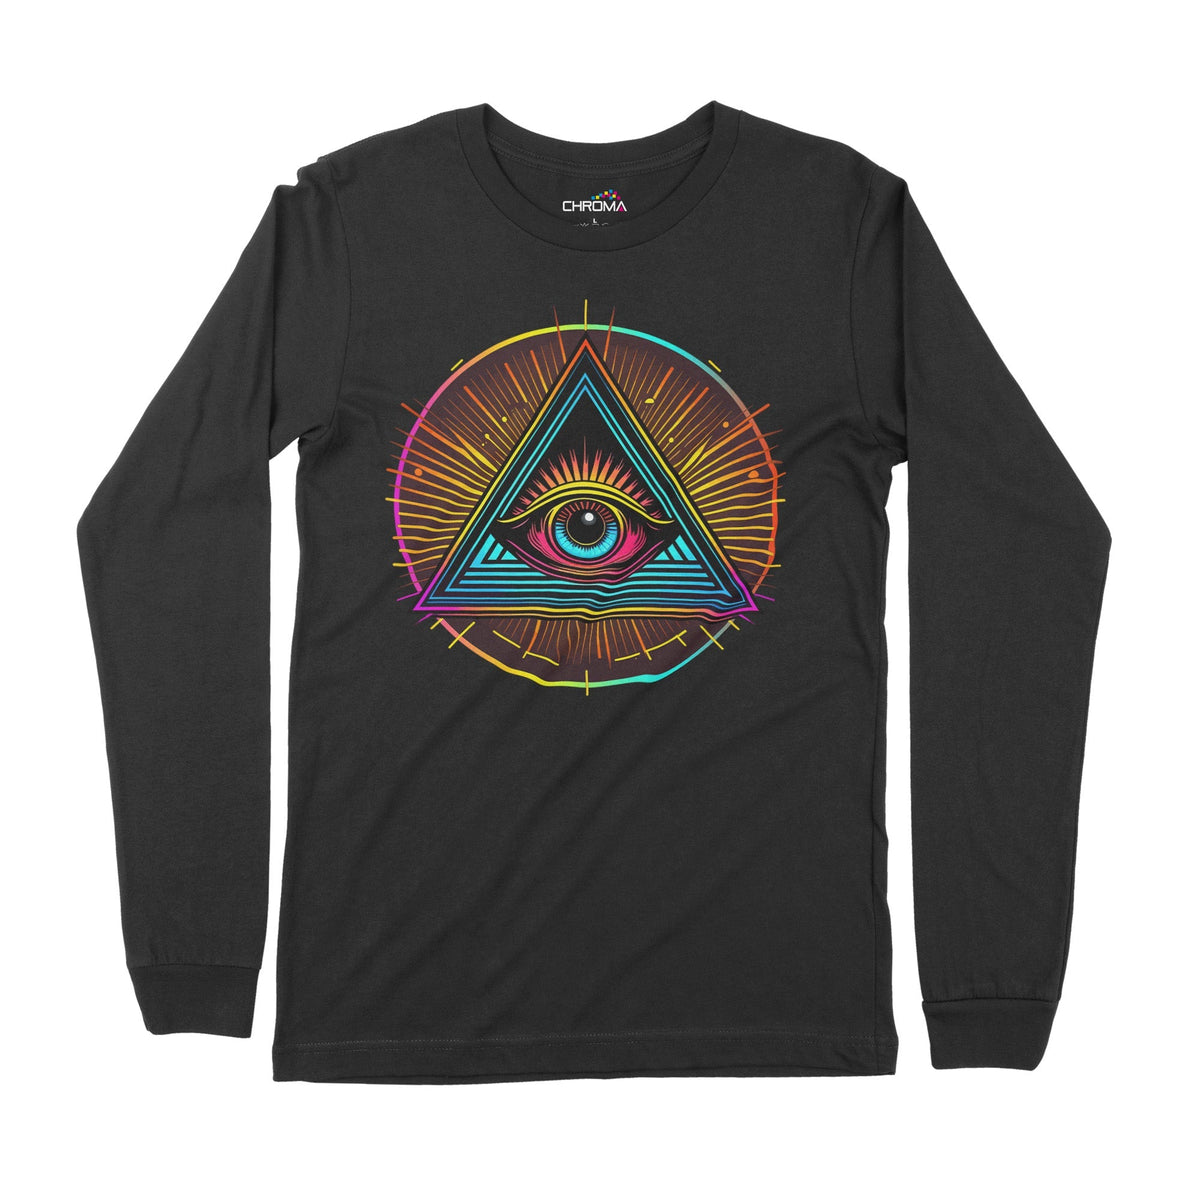 Illuminati Eye Of God | Long-Sleeve T-Shirt | Premium Quality Streetwe Chroma Clothing